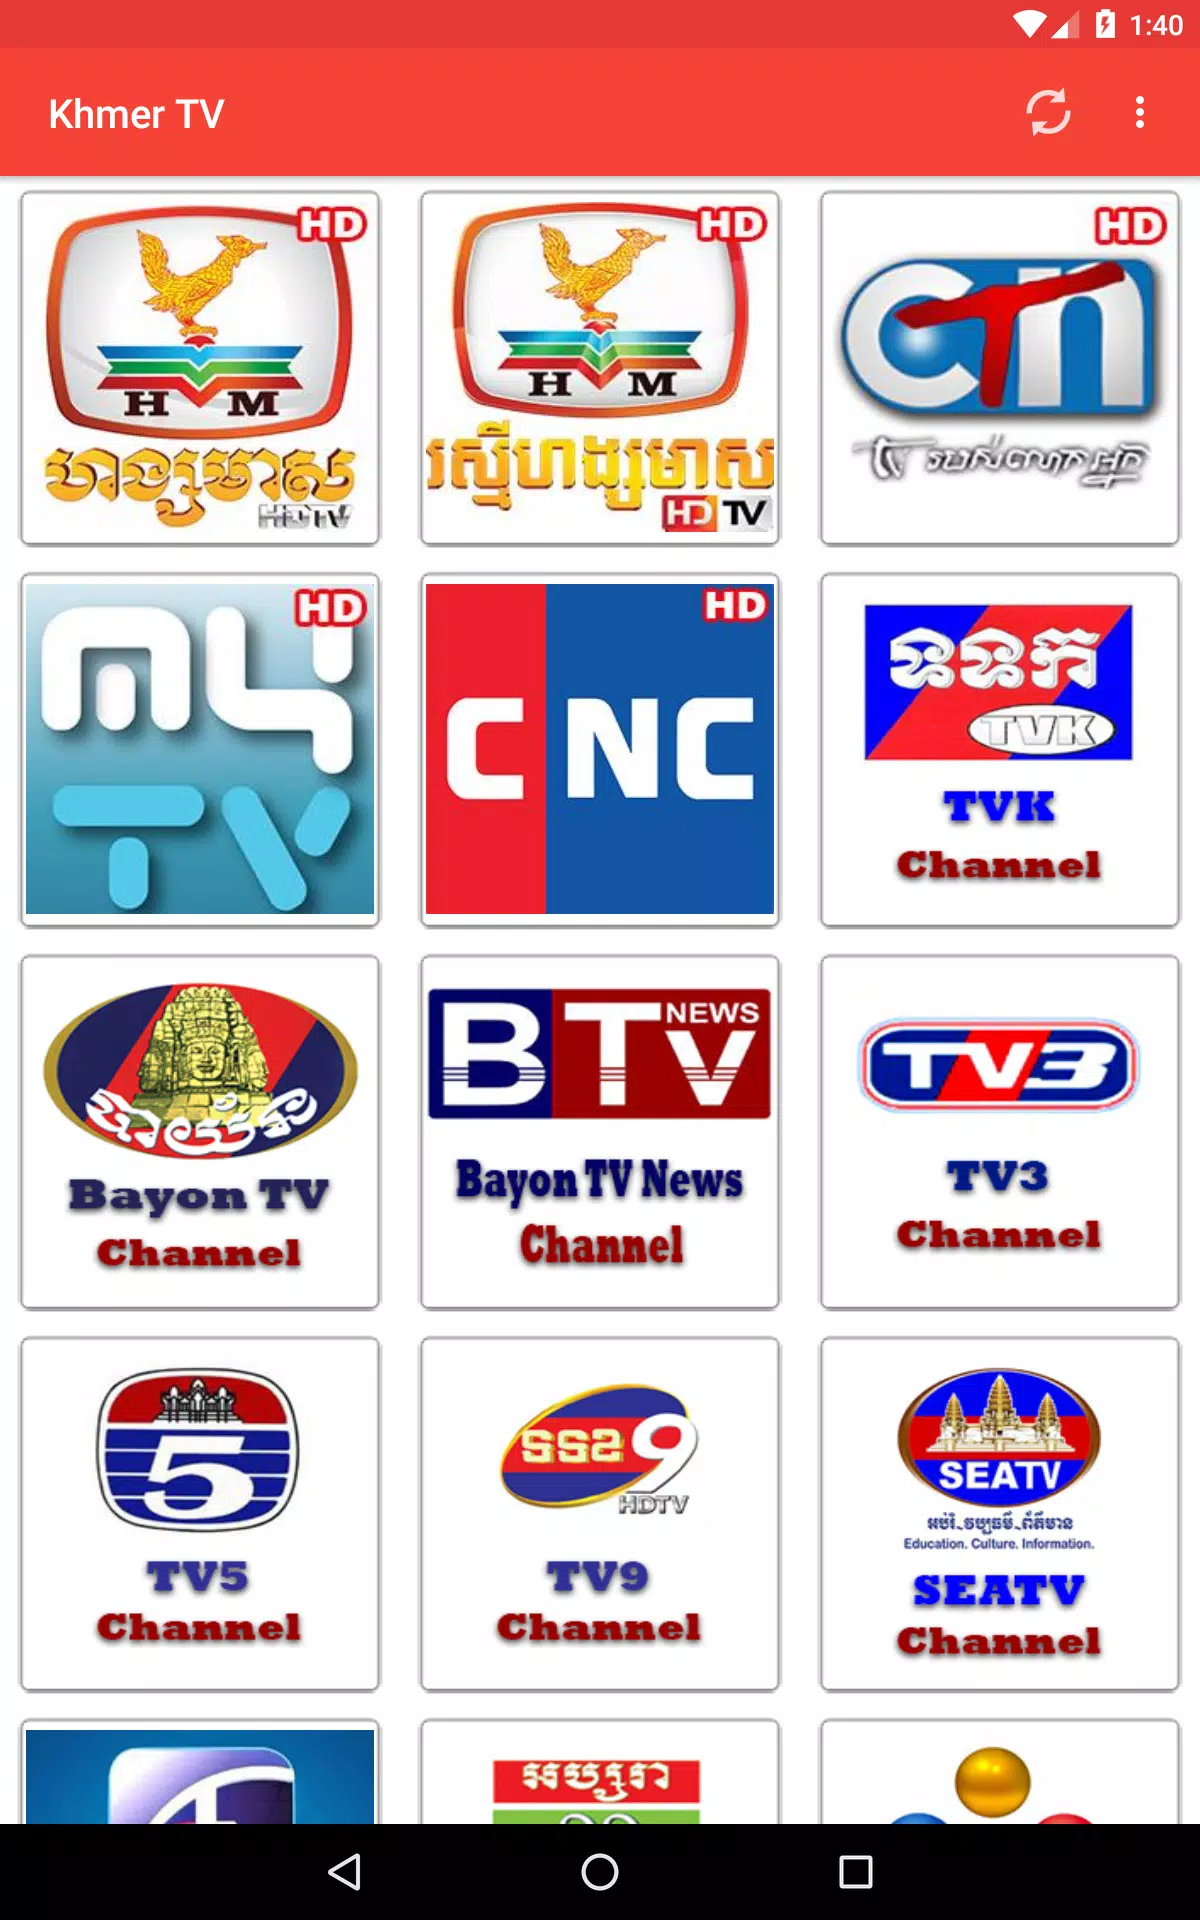 khmer live tv app